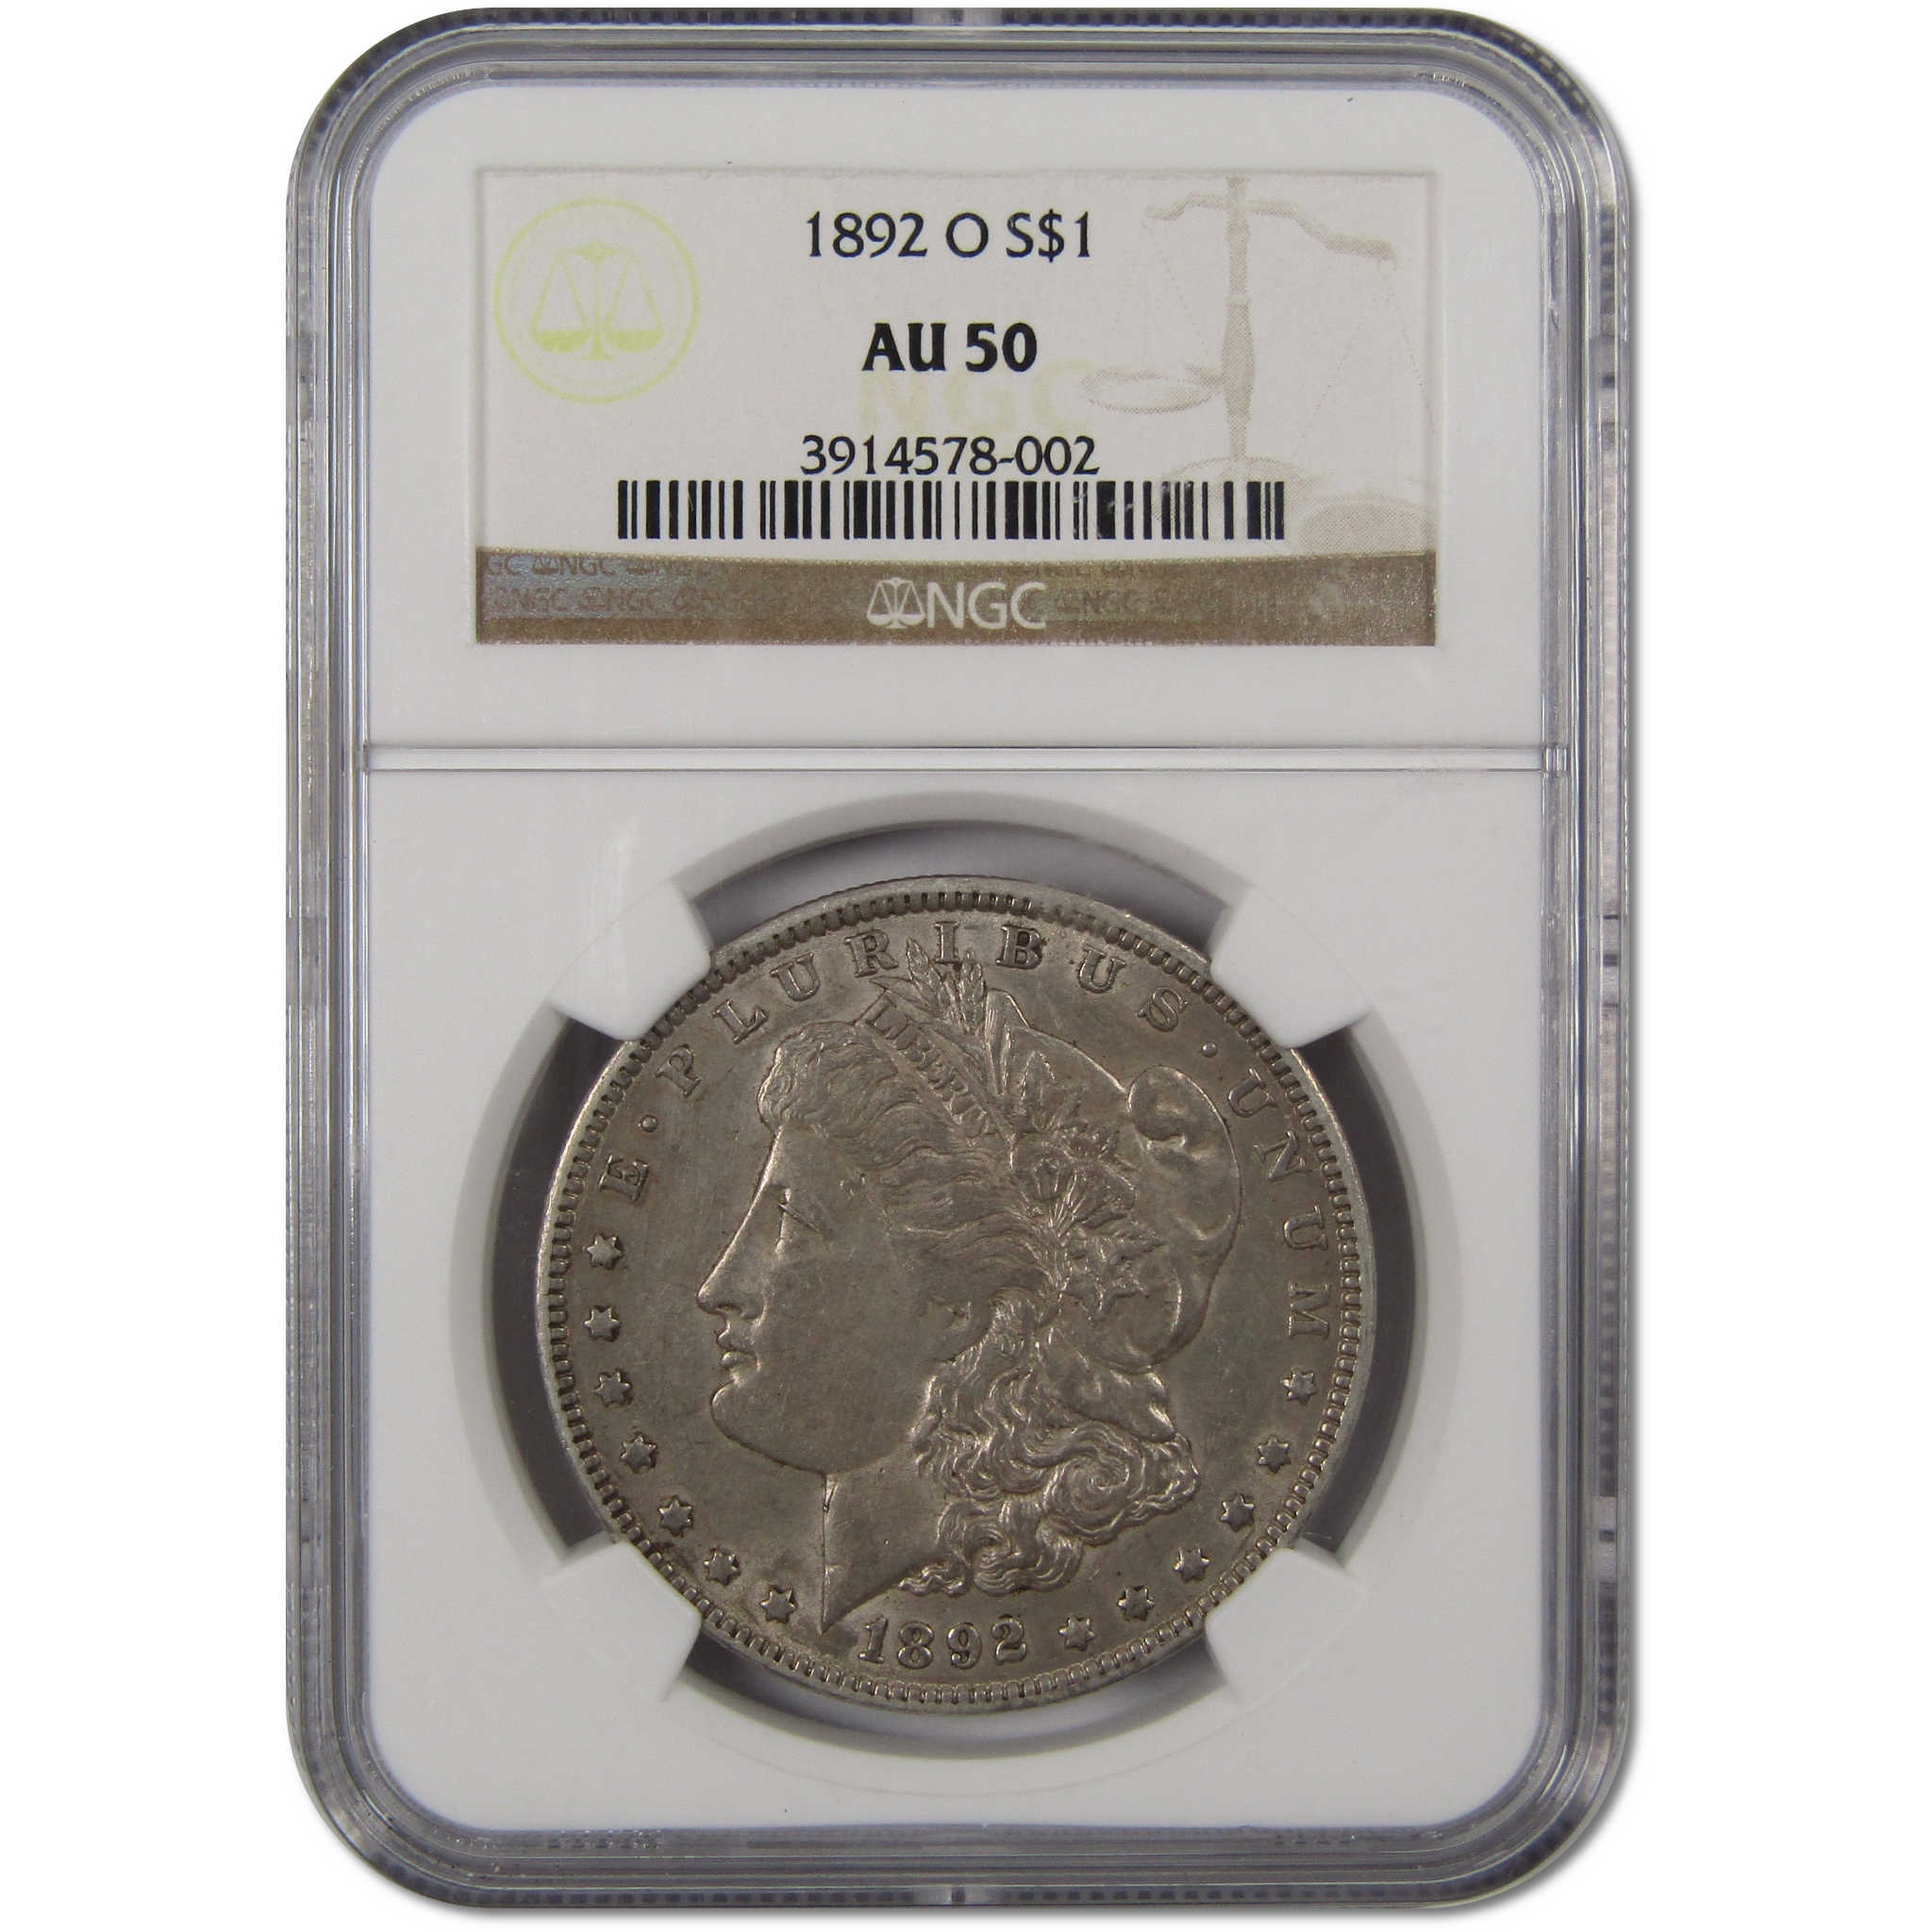 1892 O Morgan Dollar AU 50 NGC 90% Silver $1 Coin SKU:I10187 - Morgan coin - Morgan silver dollar - Morgan silver dollar for sale - Profile Coins &amp; Collectibles